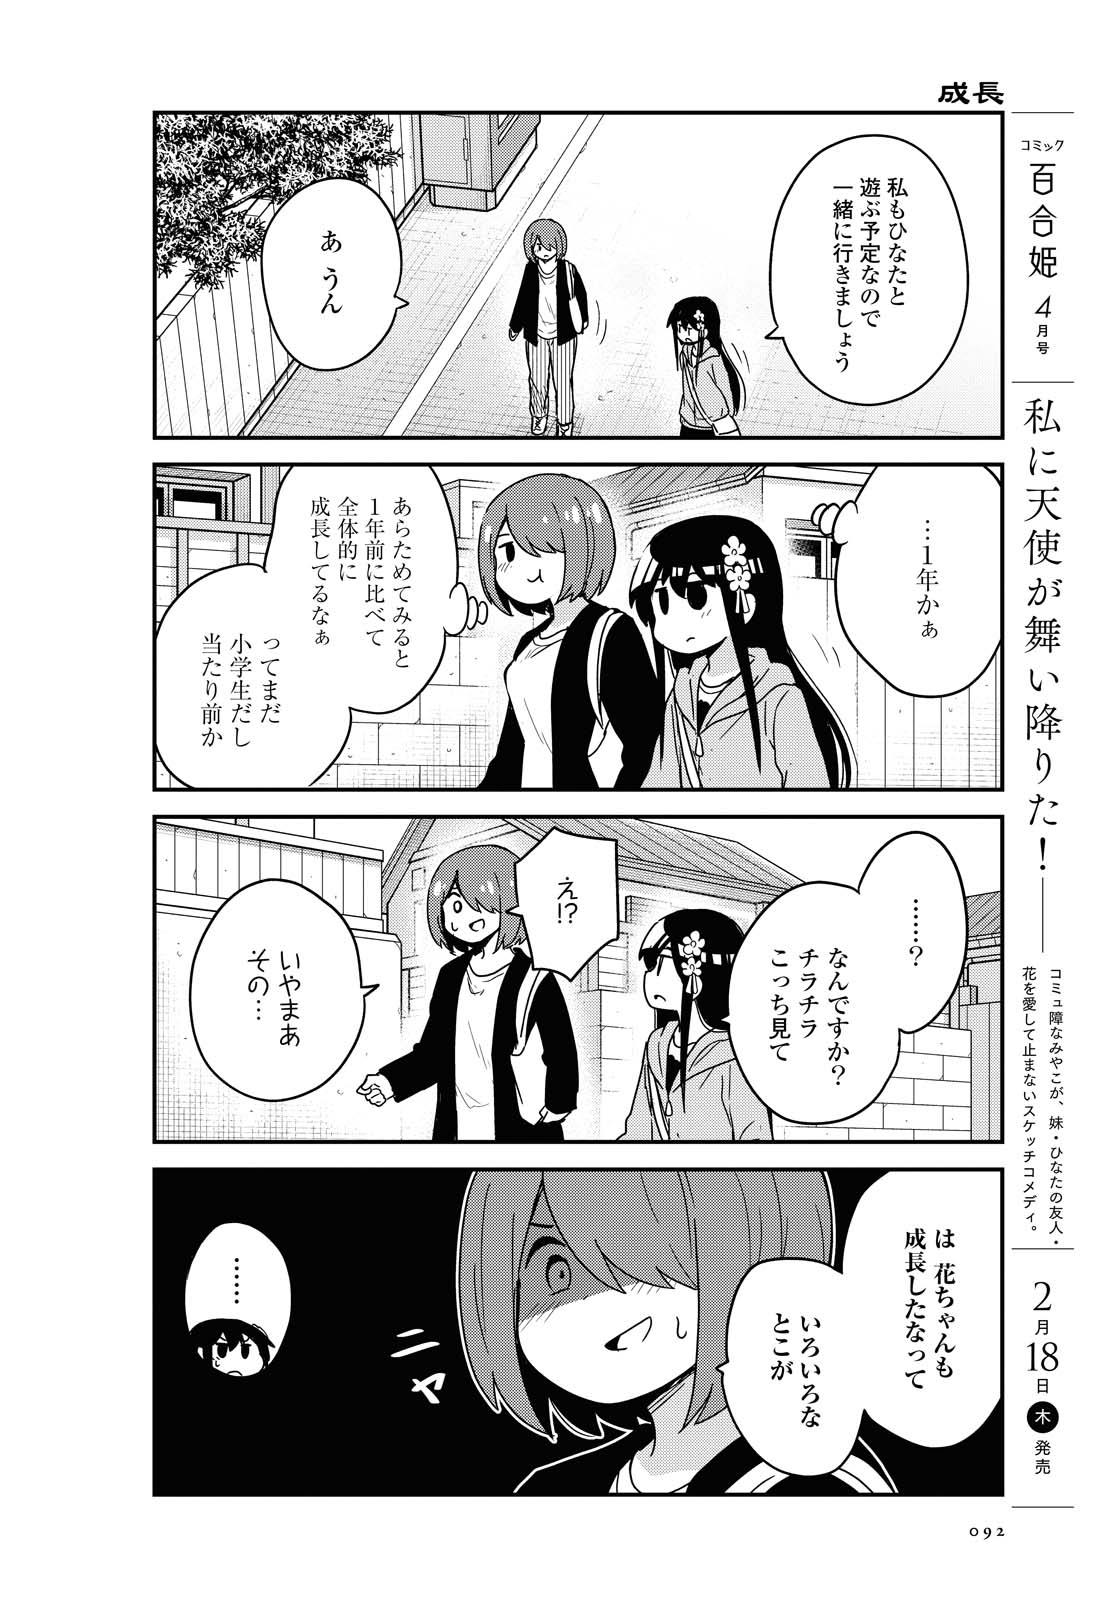 Watashi ni Tenshi ga Maiorita! - Chapter 77 - Page 4